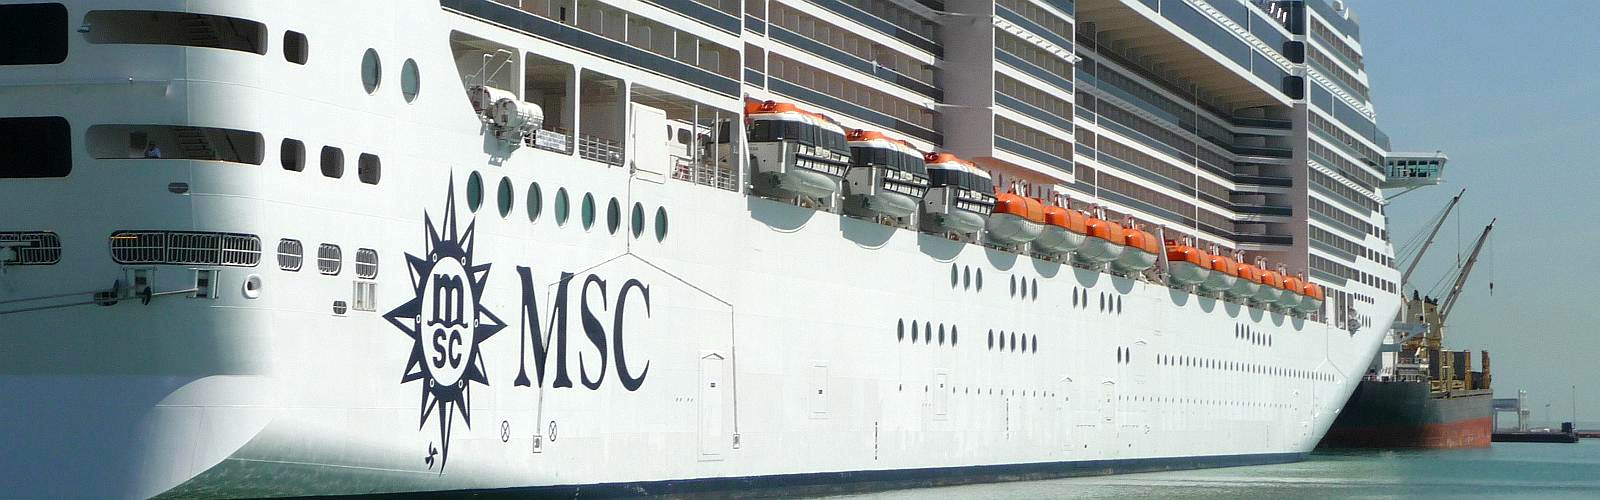 Cinque Terre - Cruise